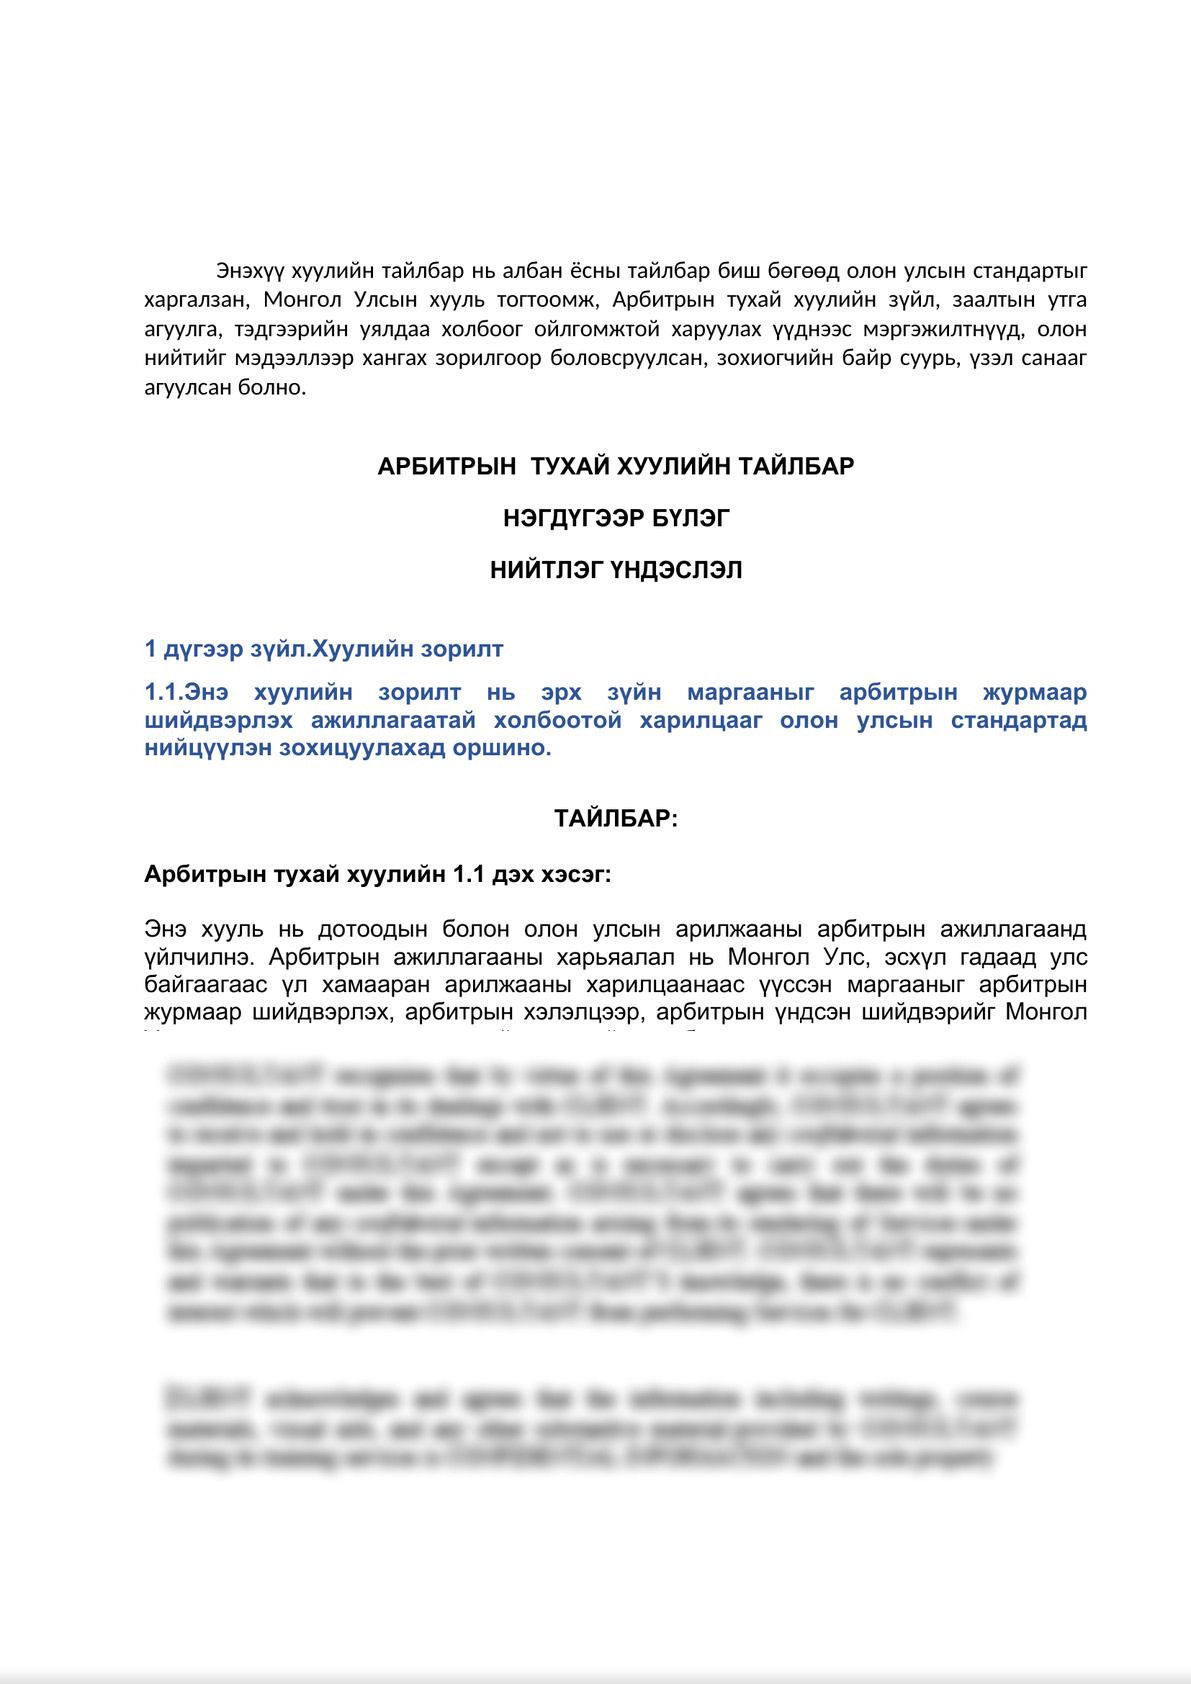 Арбитрын тухай хуулийн тайлбар (Commentary on Mongolian Law on Arbitration)-3